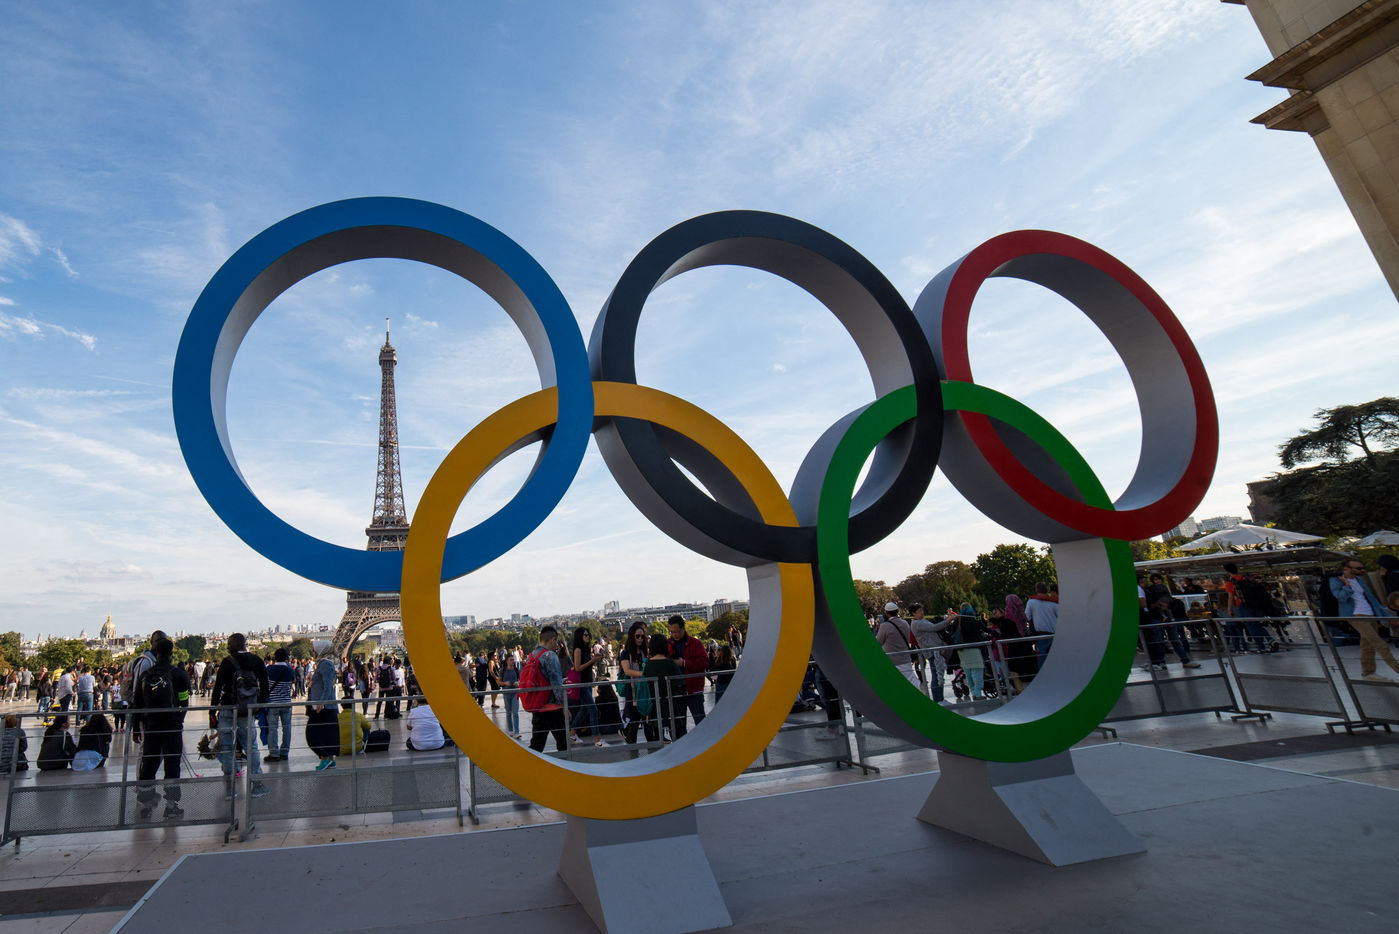 Des anneaux olympiques géants illuminés au Trocadéro - Eurosport